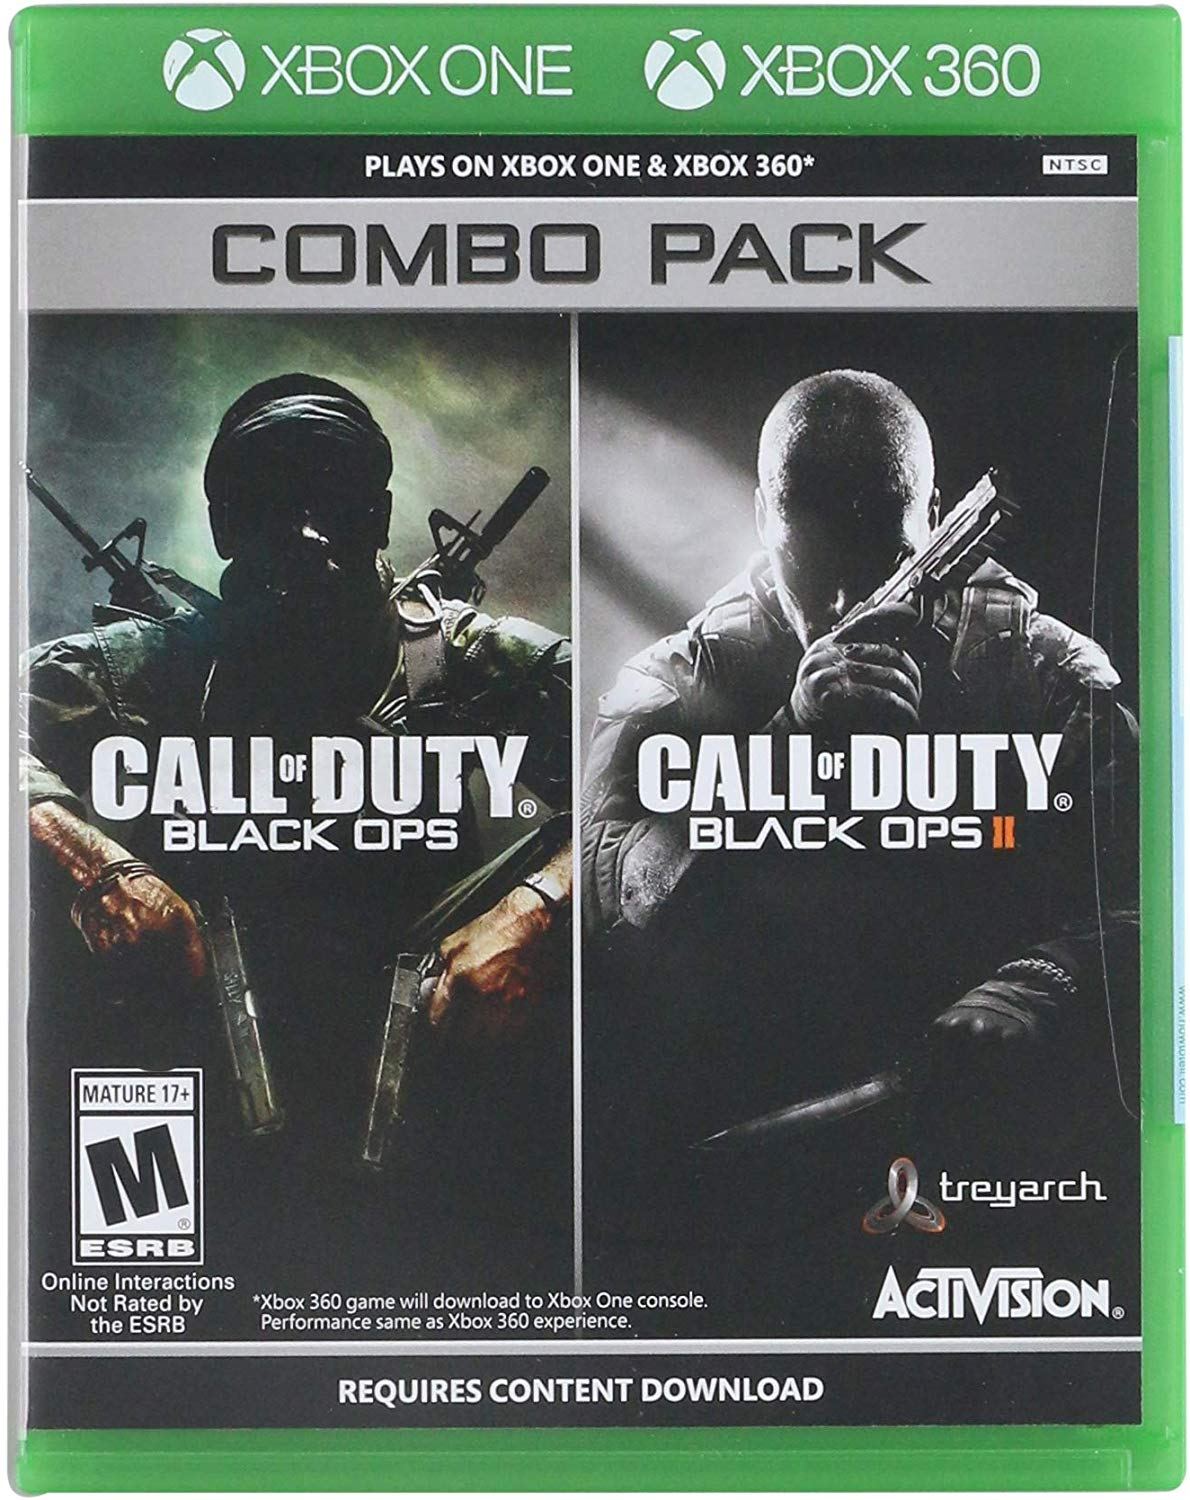 Xbox Call of Duty: Black Ops II Games